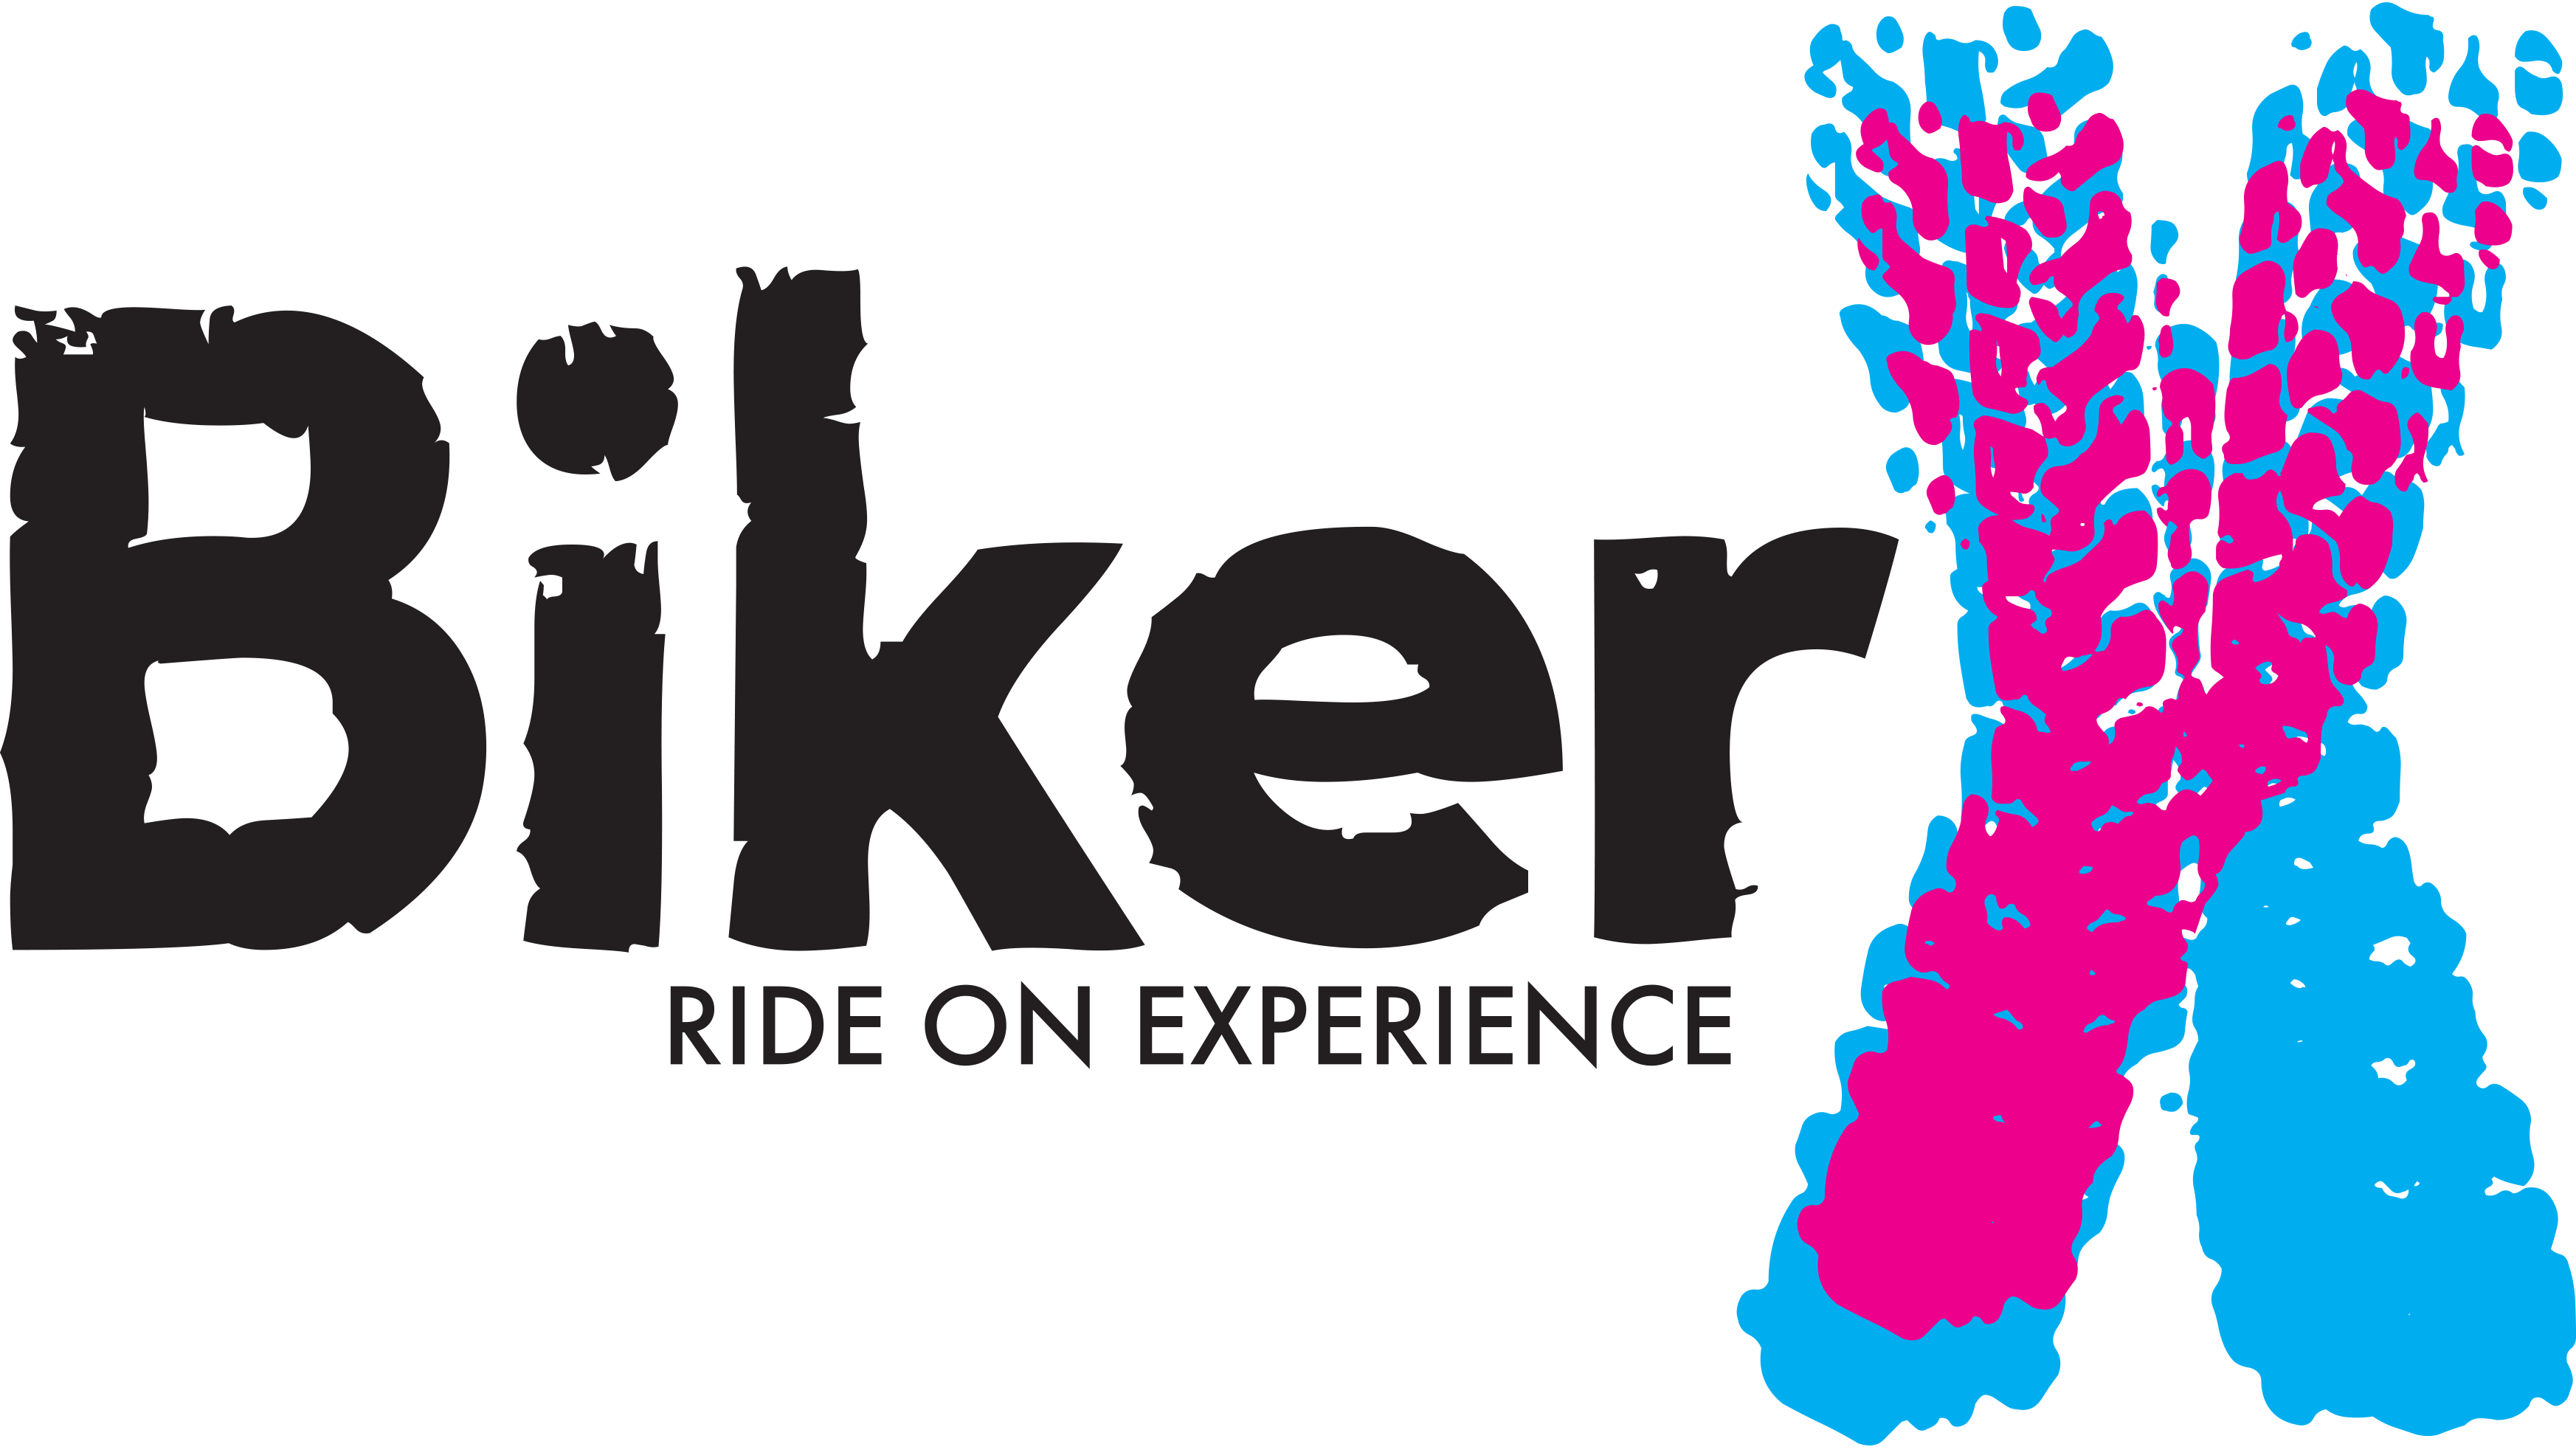 BikerX